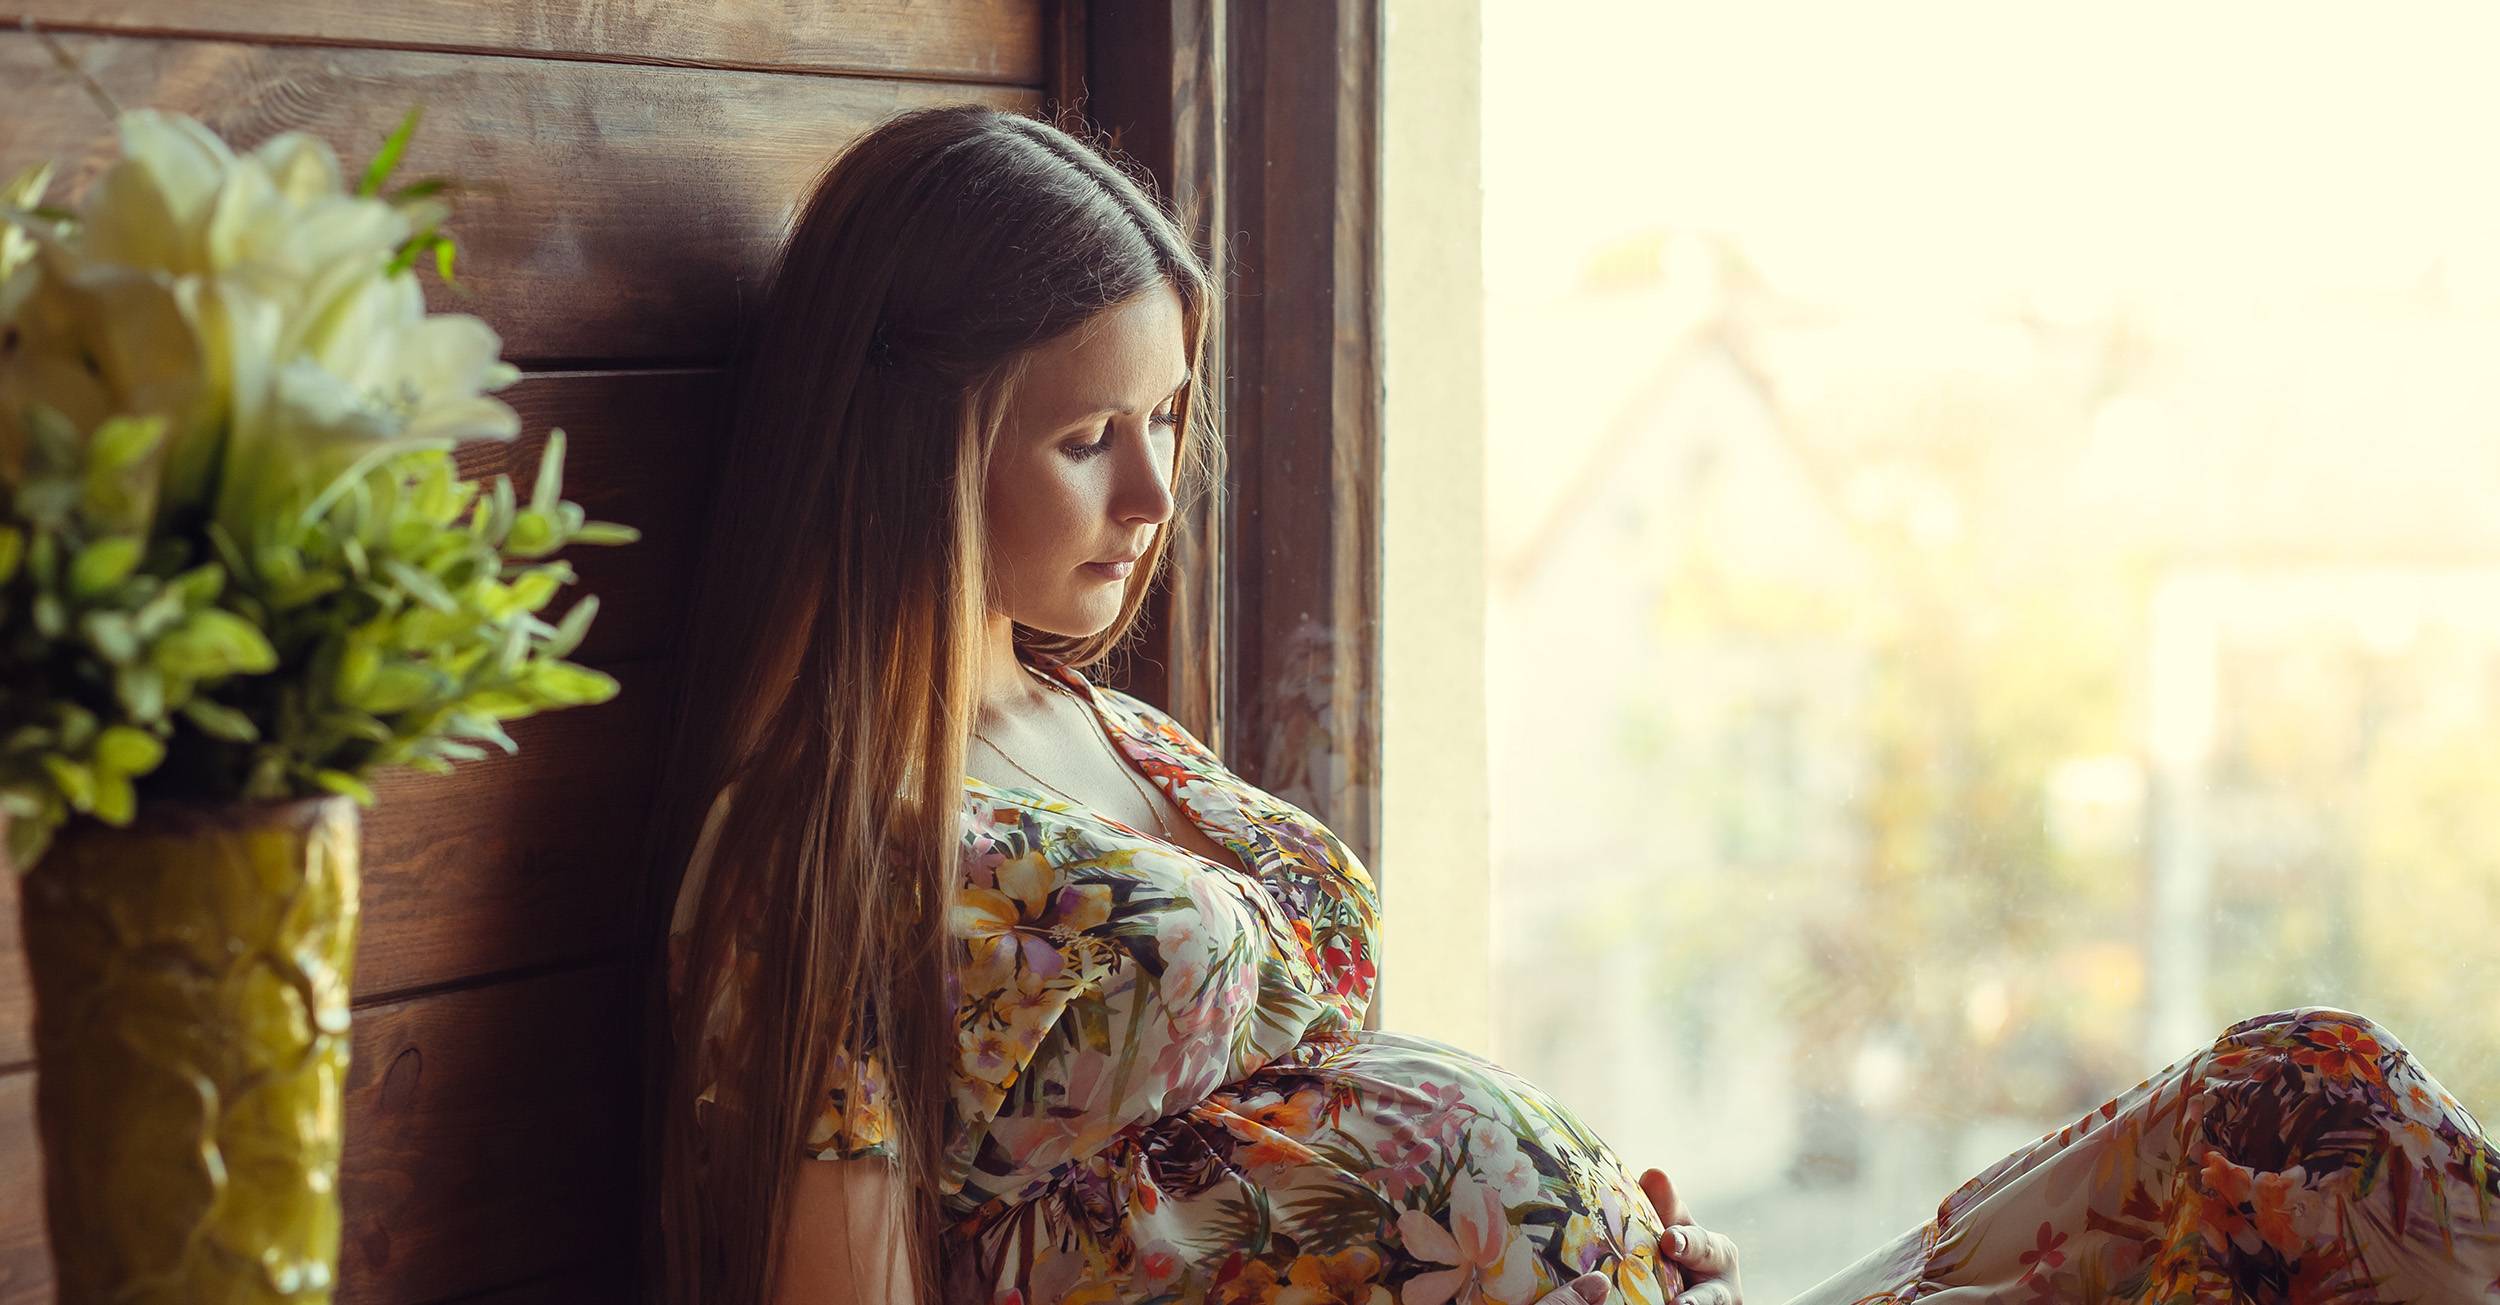 5 вещей, которые женщины не делают во время беременности, и очень напрасно